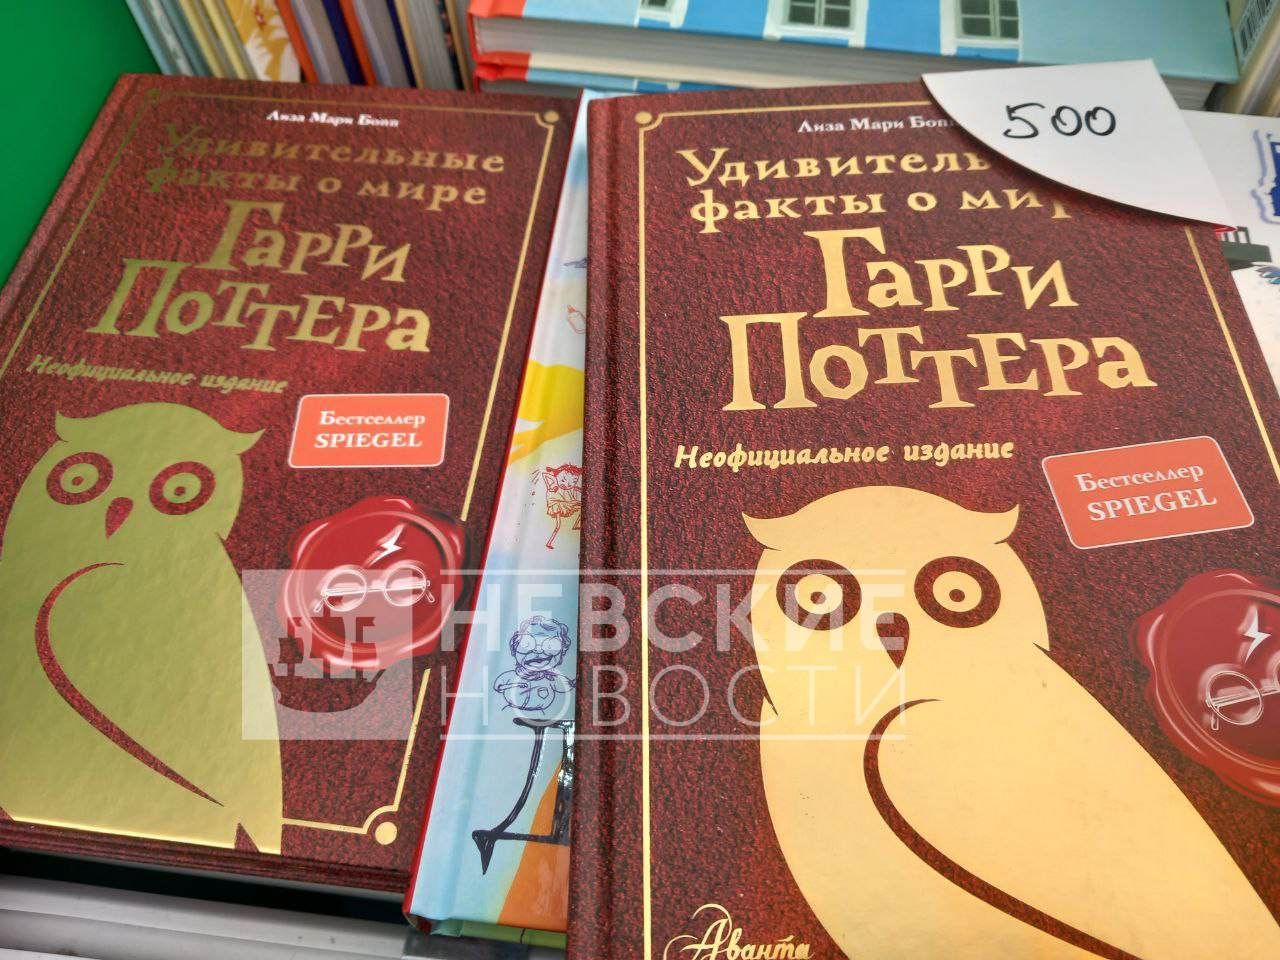 «Кто может отменить русскую литературу?»: Книжный салон Петербурга показал безразличие местных властей к патриотическим авторам